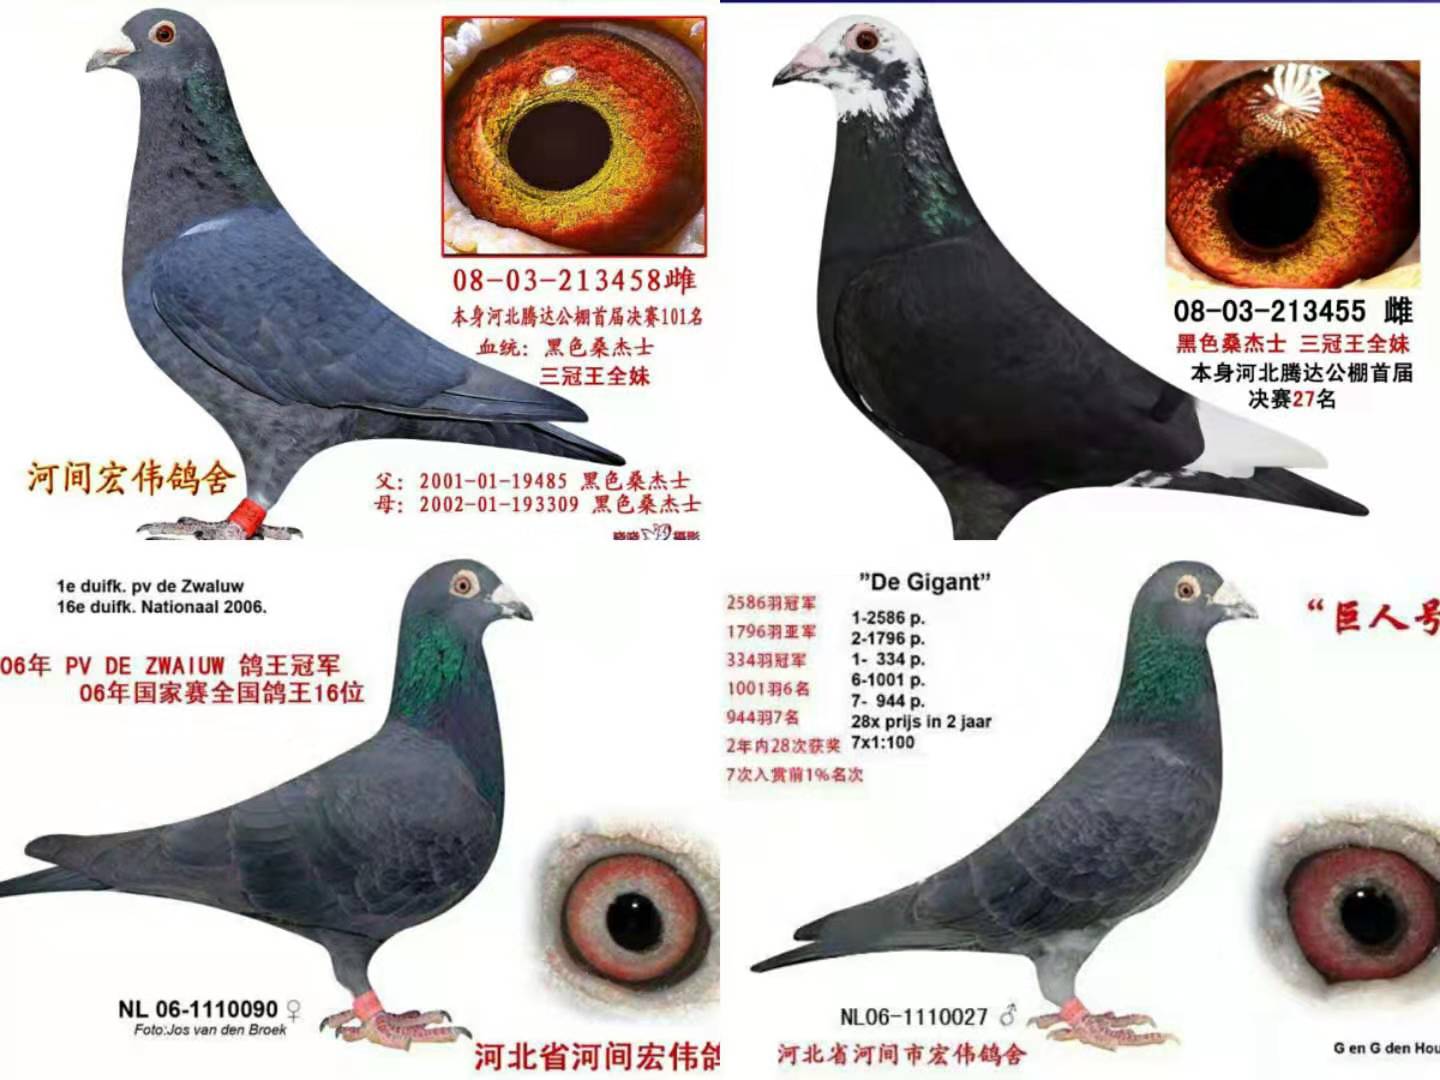 中国黑色桑杰士最具代表性的鸽舍 - 信鸽在线拍卖平台